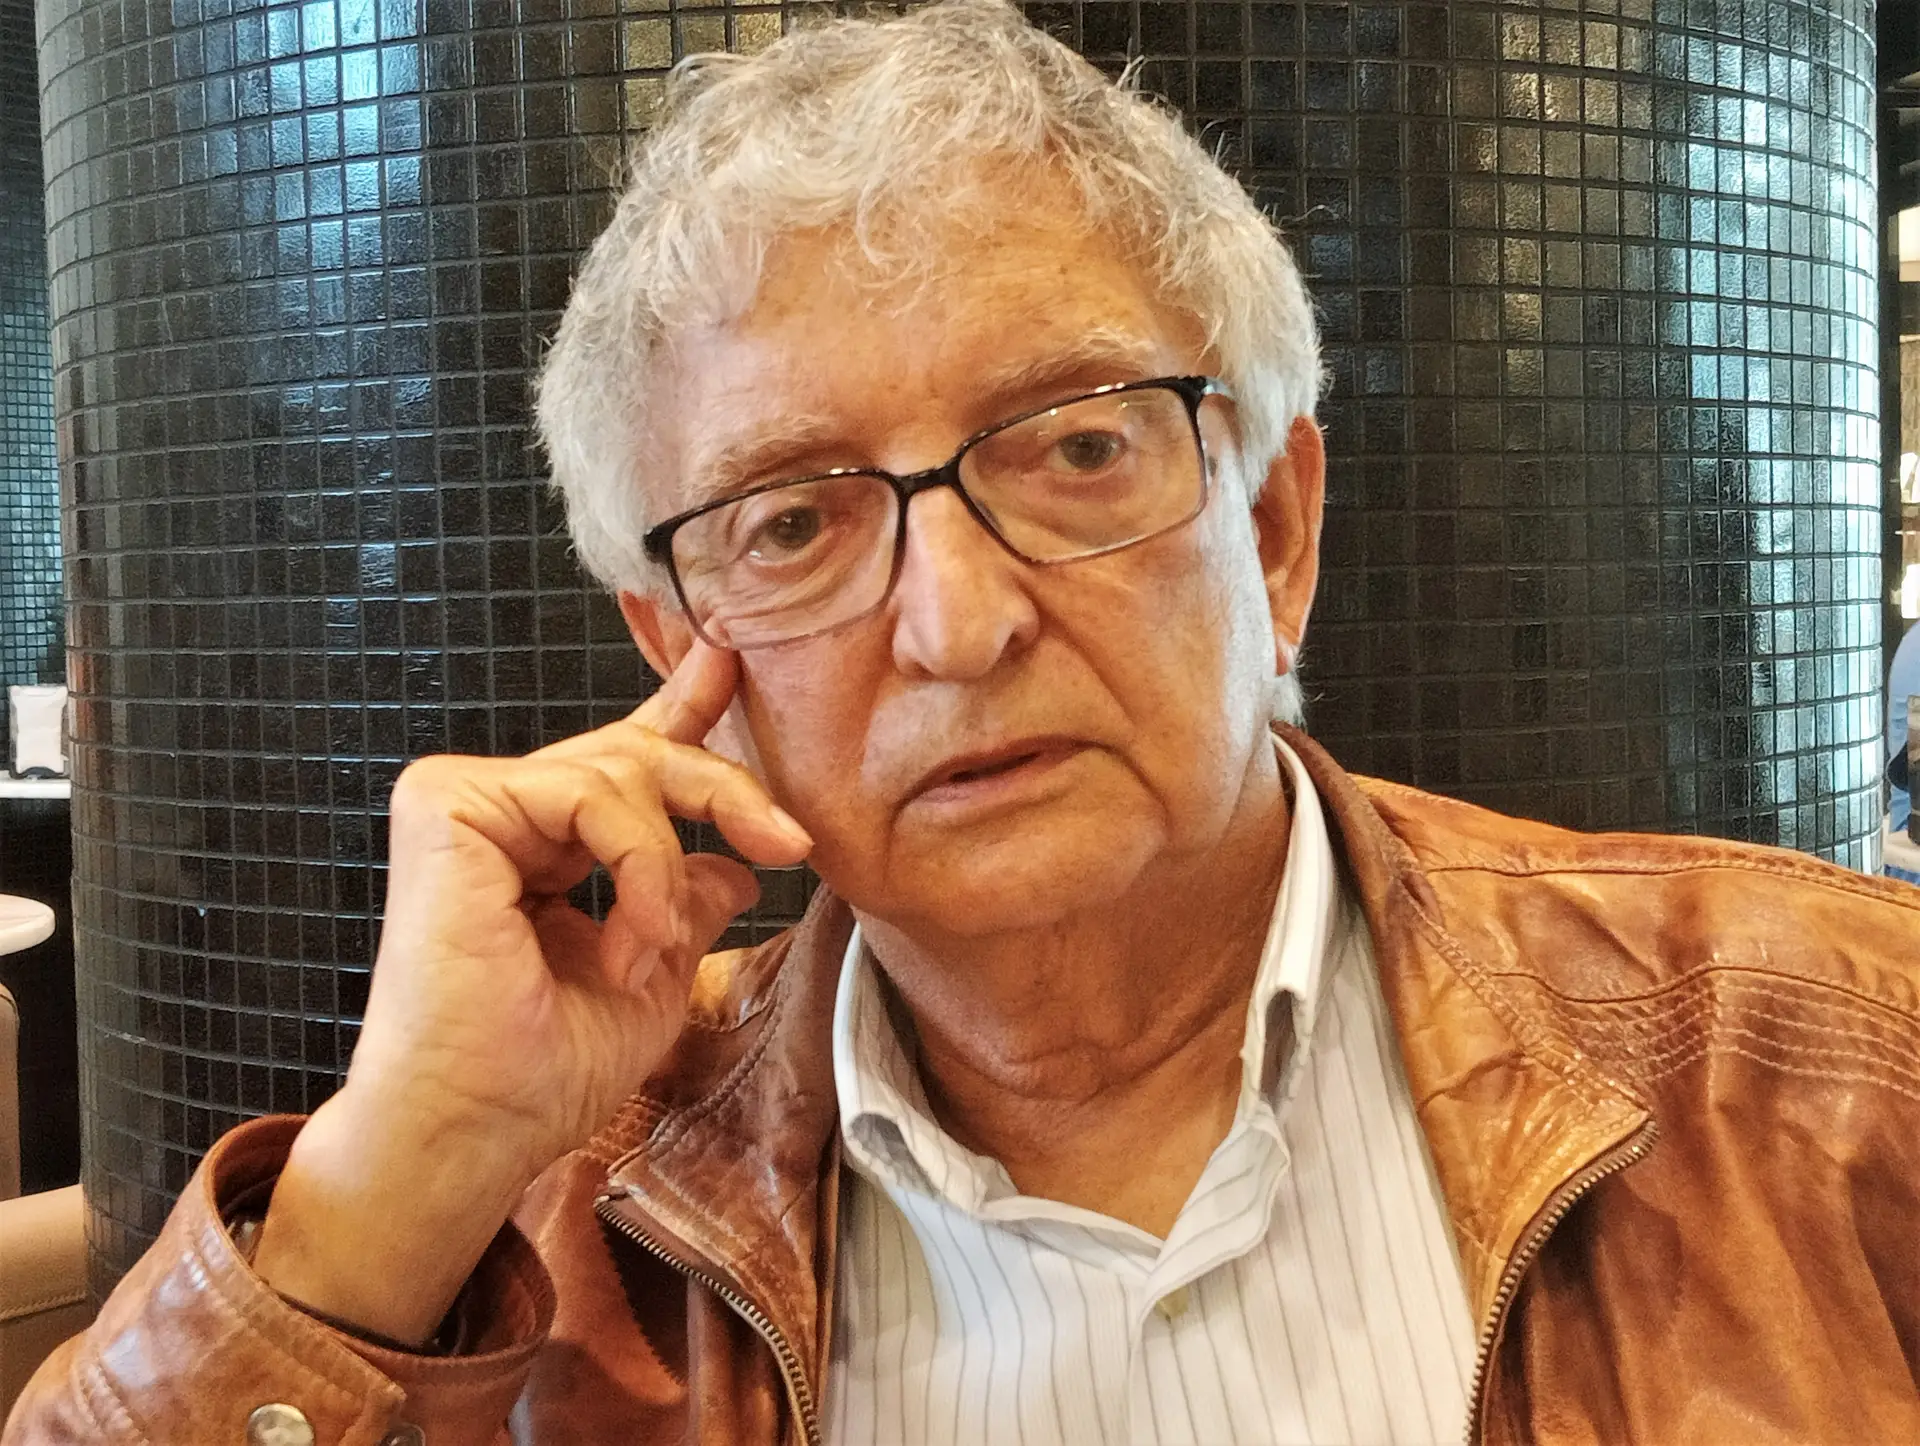 Fernando Dacosta, autor do livro "O Botequim da Liberdade", era cliente do Botequim